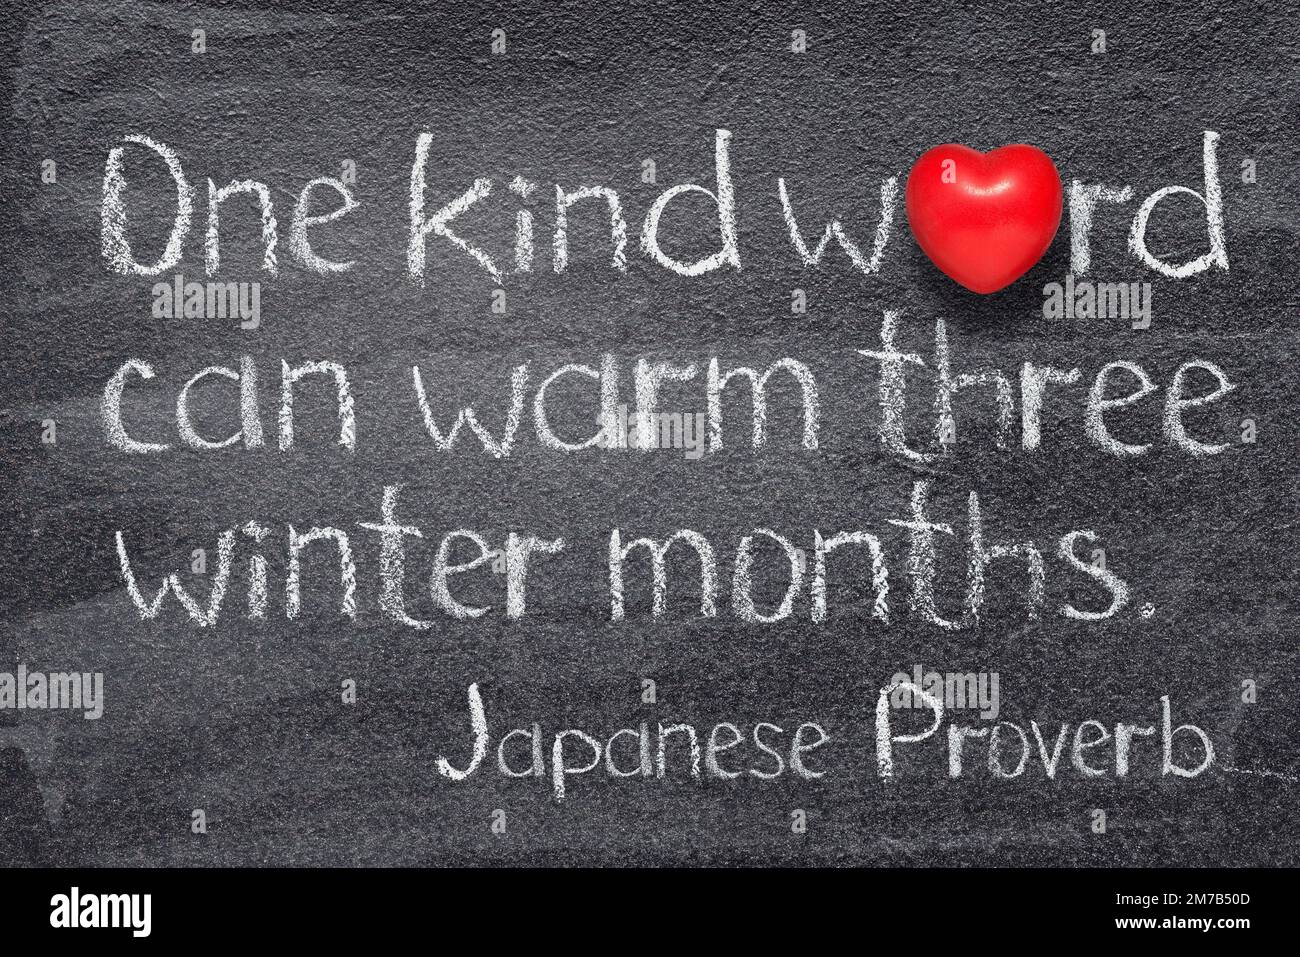 Ein nettes Wort kann drei Wintermonate erwärmen. Japanisches Sprichwort, das auf einer Tafel mit rotem Herzsymbol steht Stockfoto